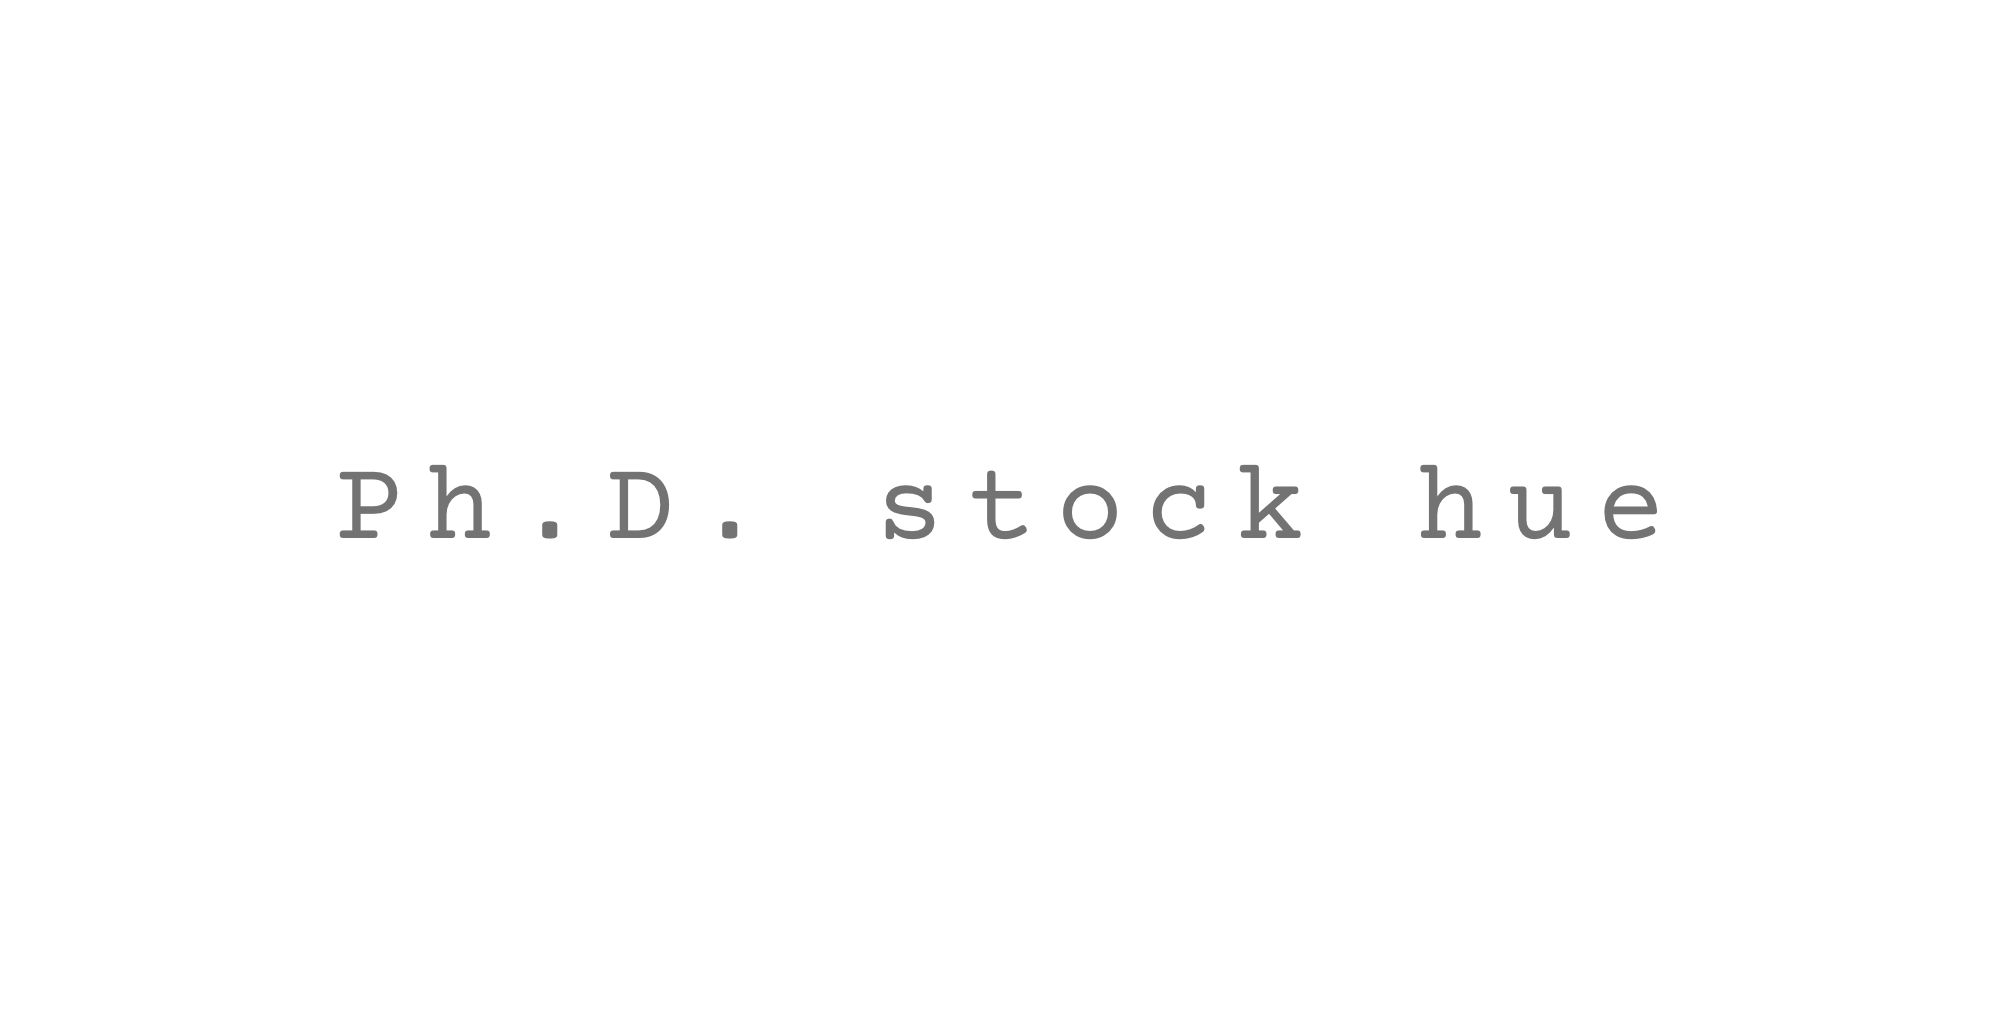 Ph.D. stock hue